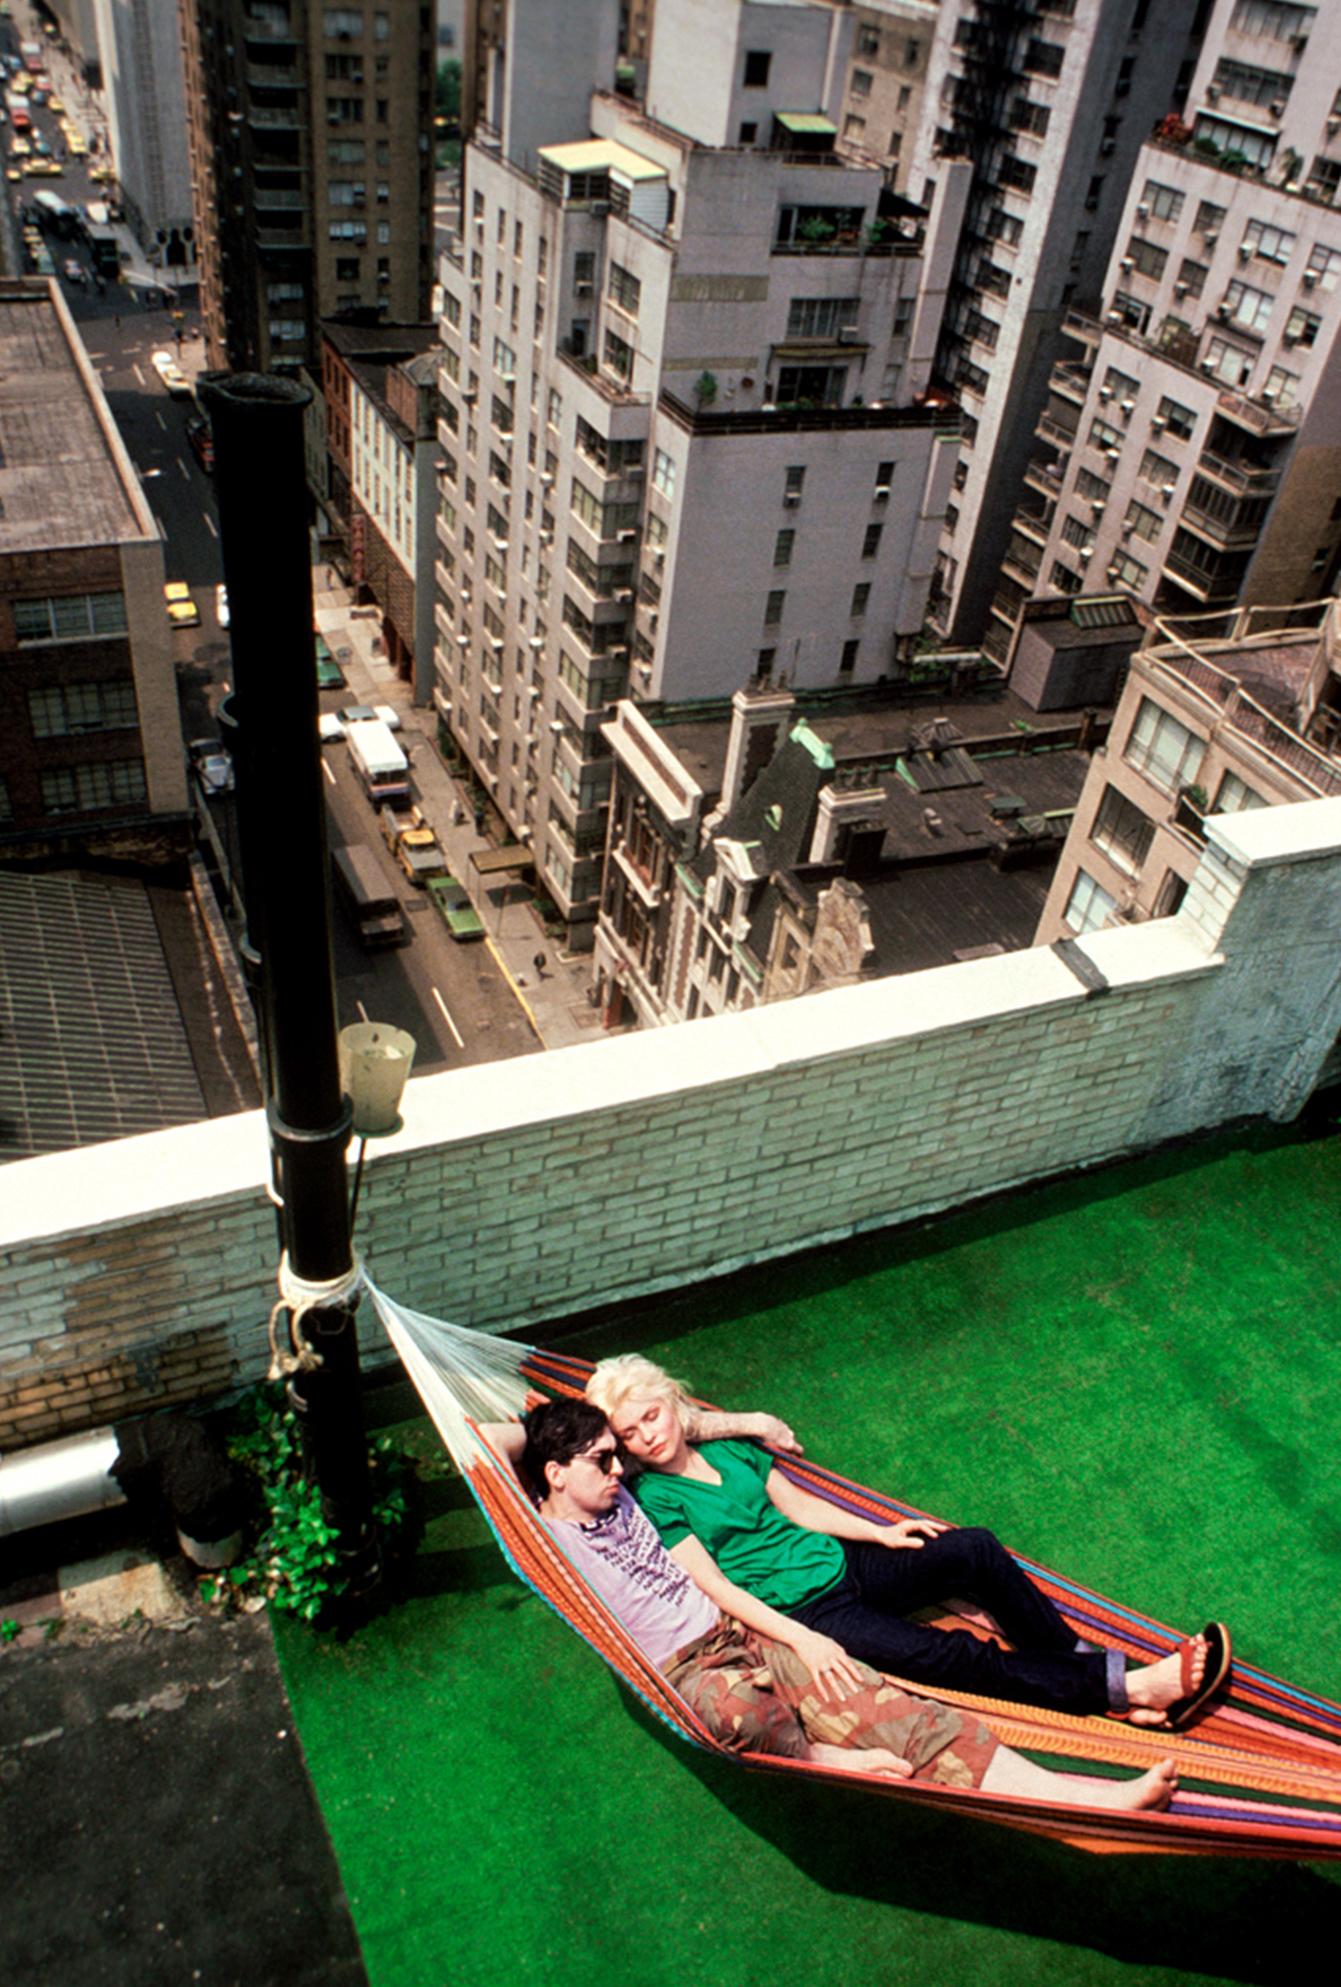 Signierter Druck in limitierter Auflage (20x24") der Blondie-Mitglieder Chris Stein und Debbie Harry, die sich 1978 in einer Hängematte auf dem Dach ihrer Wohnung in New York City entspannen, von Lynn Goldsmith.

Limitierte Auflage Nummer